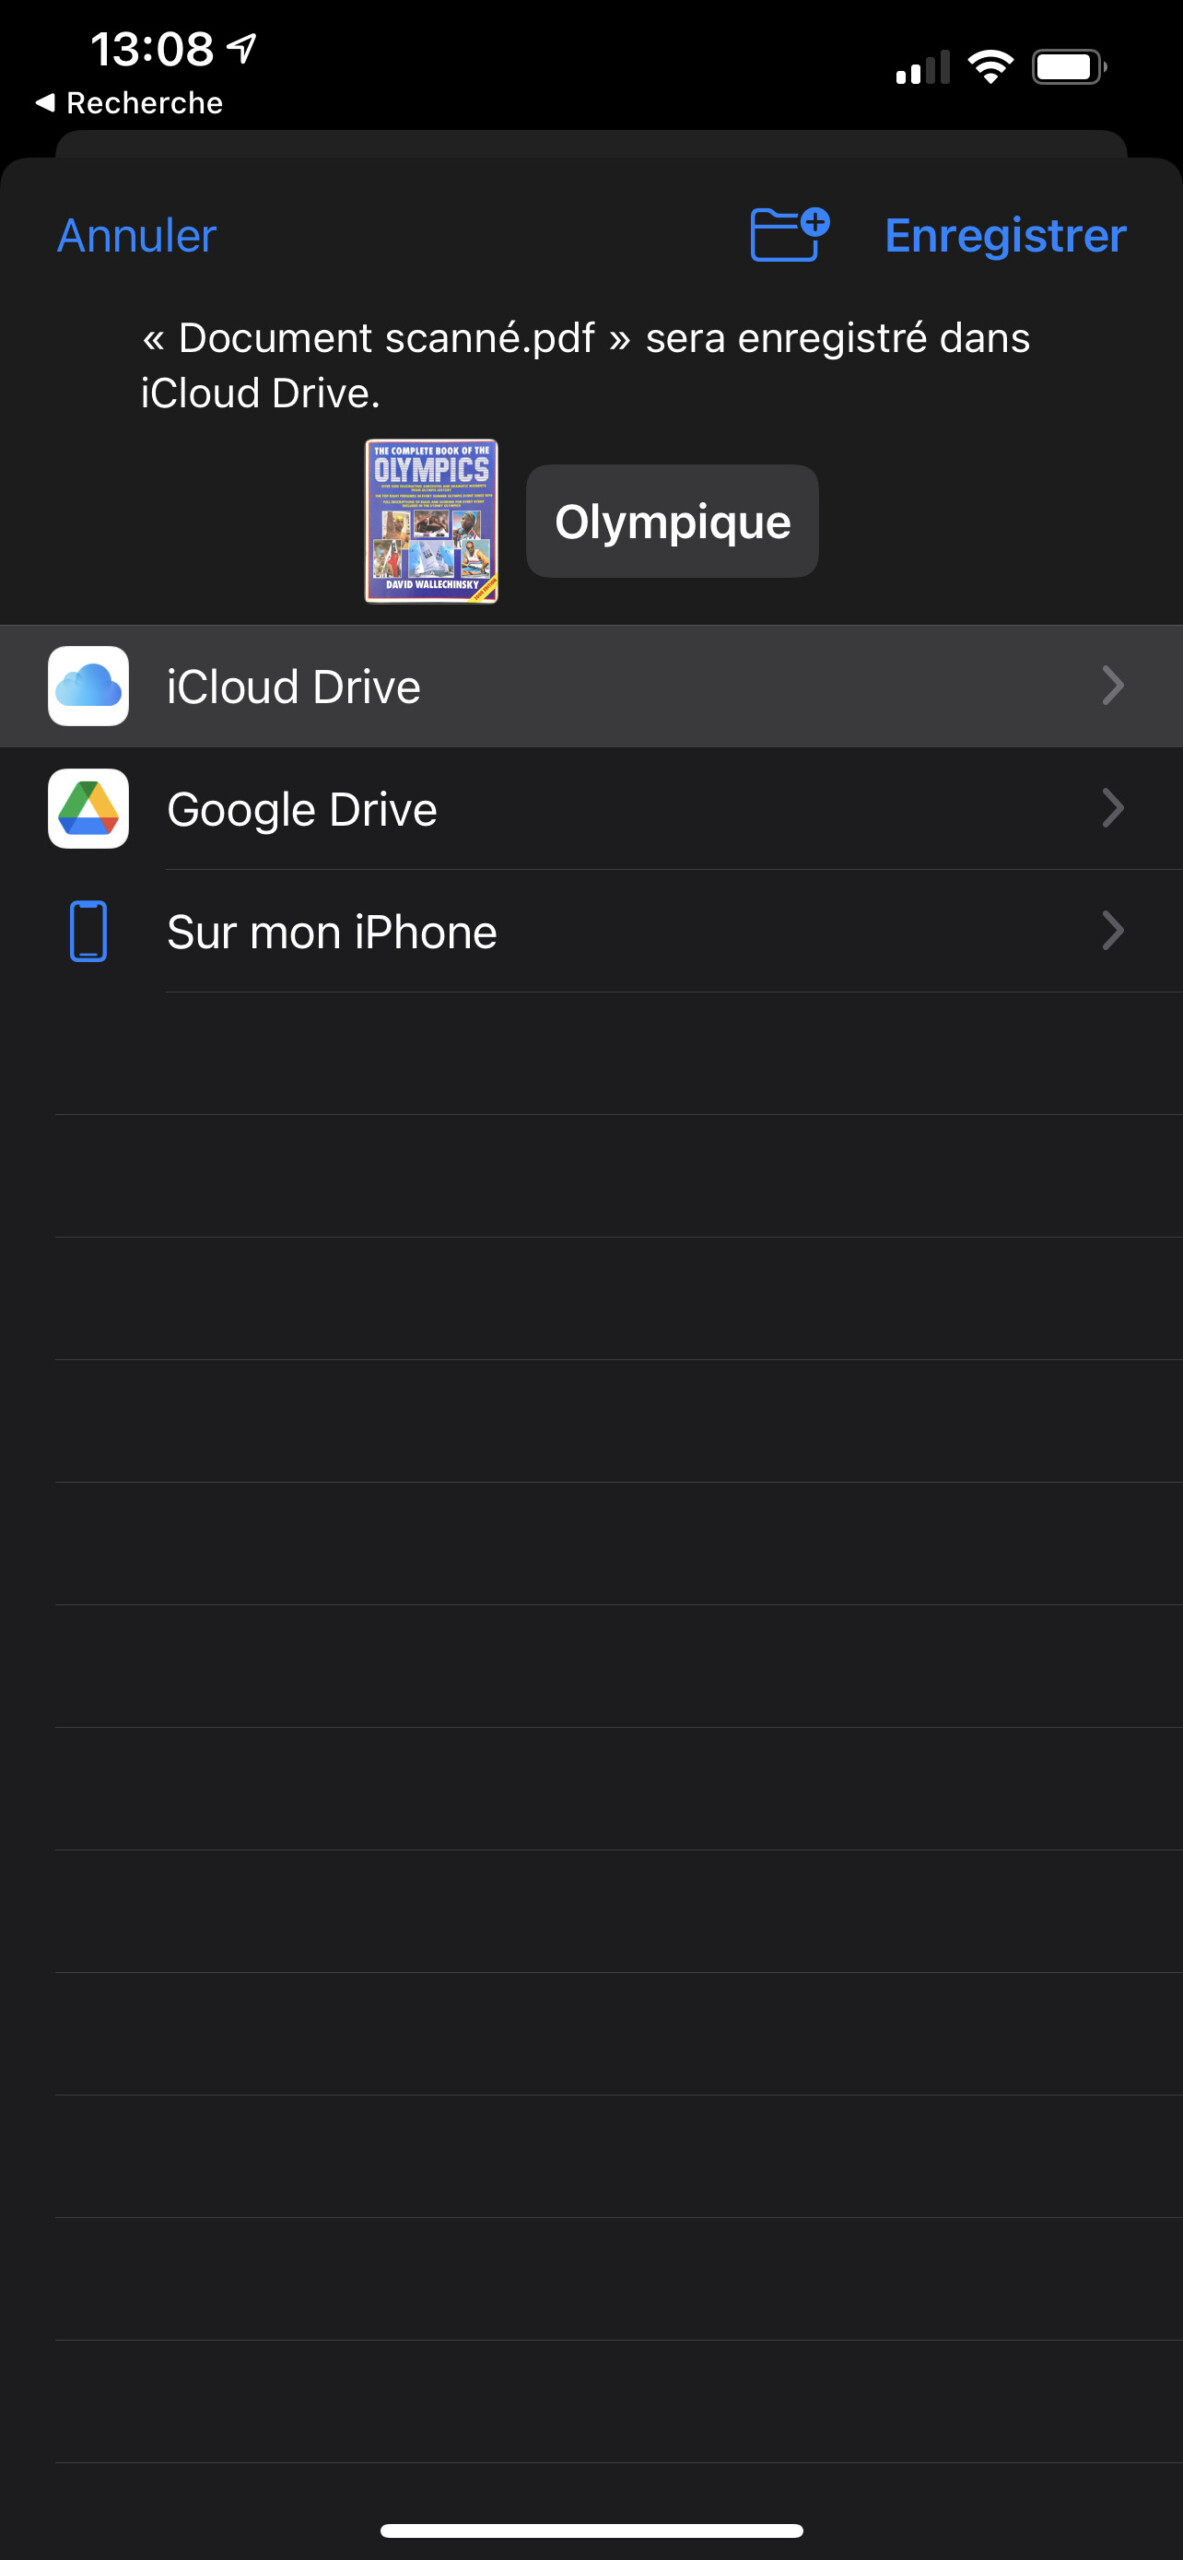 Il est possible de scanner un document depuis l'app Fichiers sur iPhone